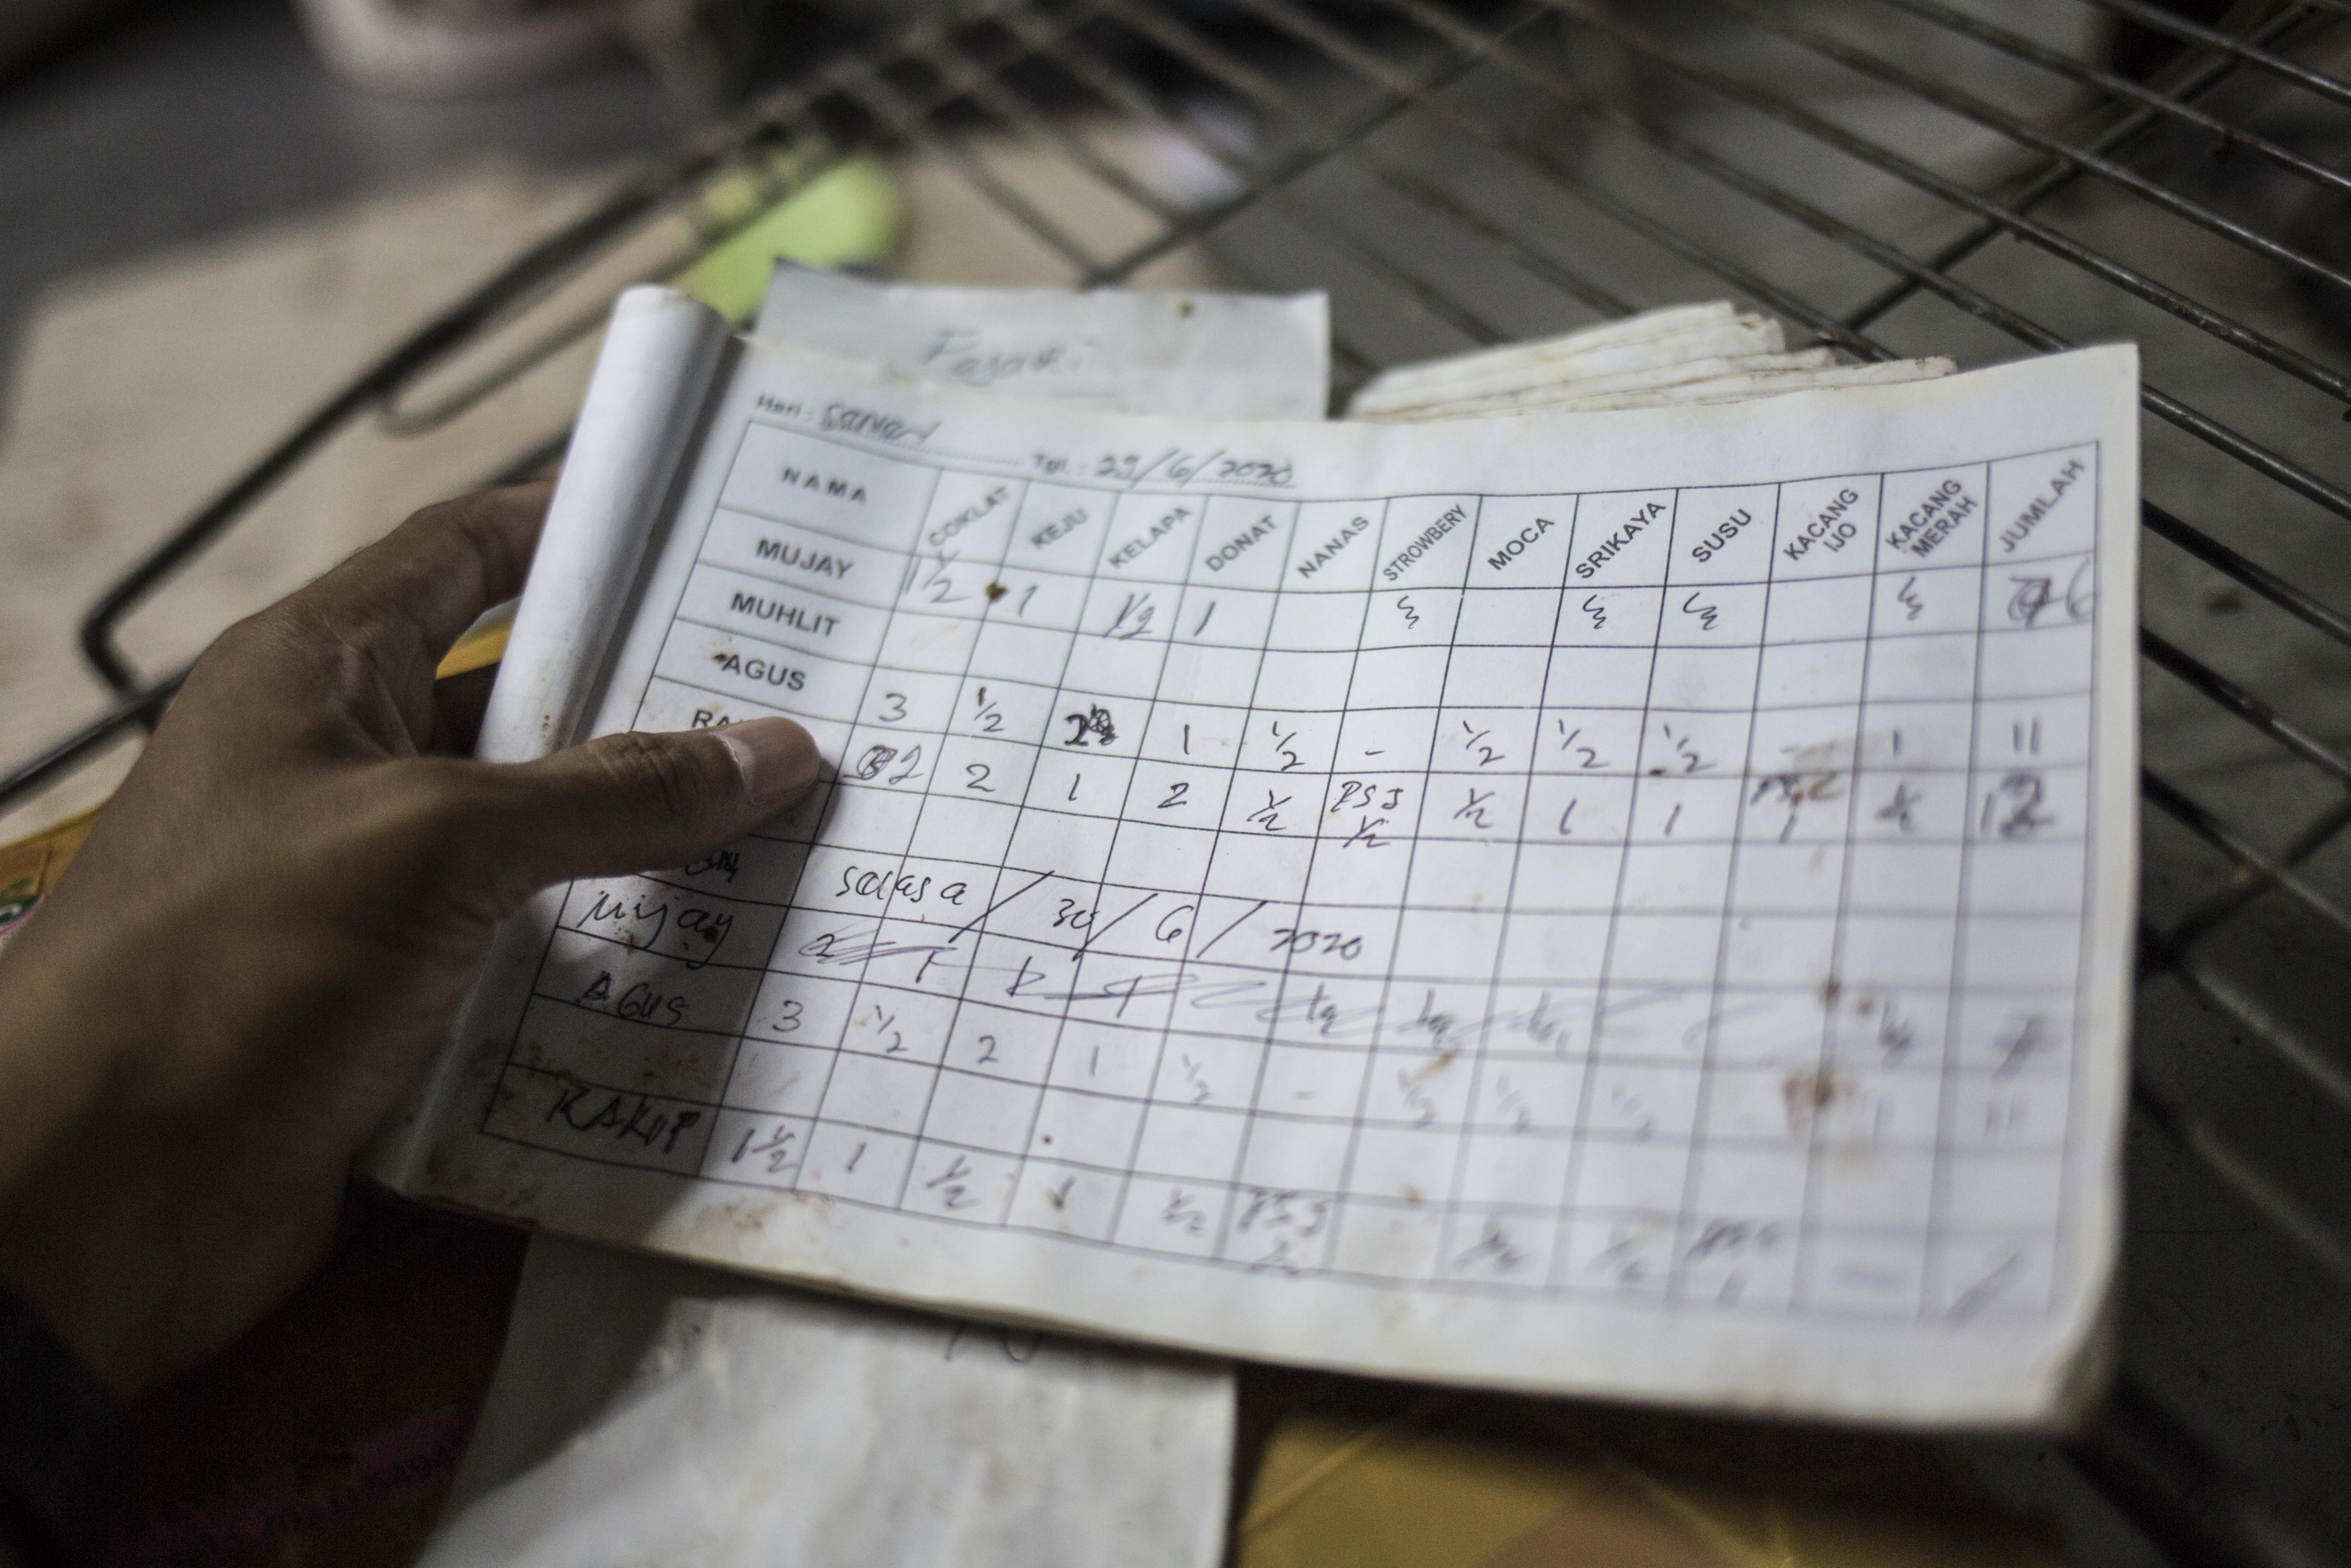 Pekerja menyelesaikan pembuatan roti skala rumahan di kawasan Bendungan Hilir, Jakarta, Rabu (1/7/2020). Menurut pekerja sebelum pandemi Covid-19 mereka mampu membuat hingga 4.000-5.000 roti per hari, namun saat ini pembuatan hanya 1.000 roti per hari karena masih banyaknya warga yang beraktivitas dirumah dan mengakibatkan penurunan omset.